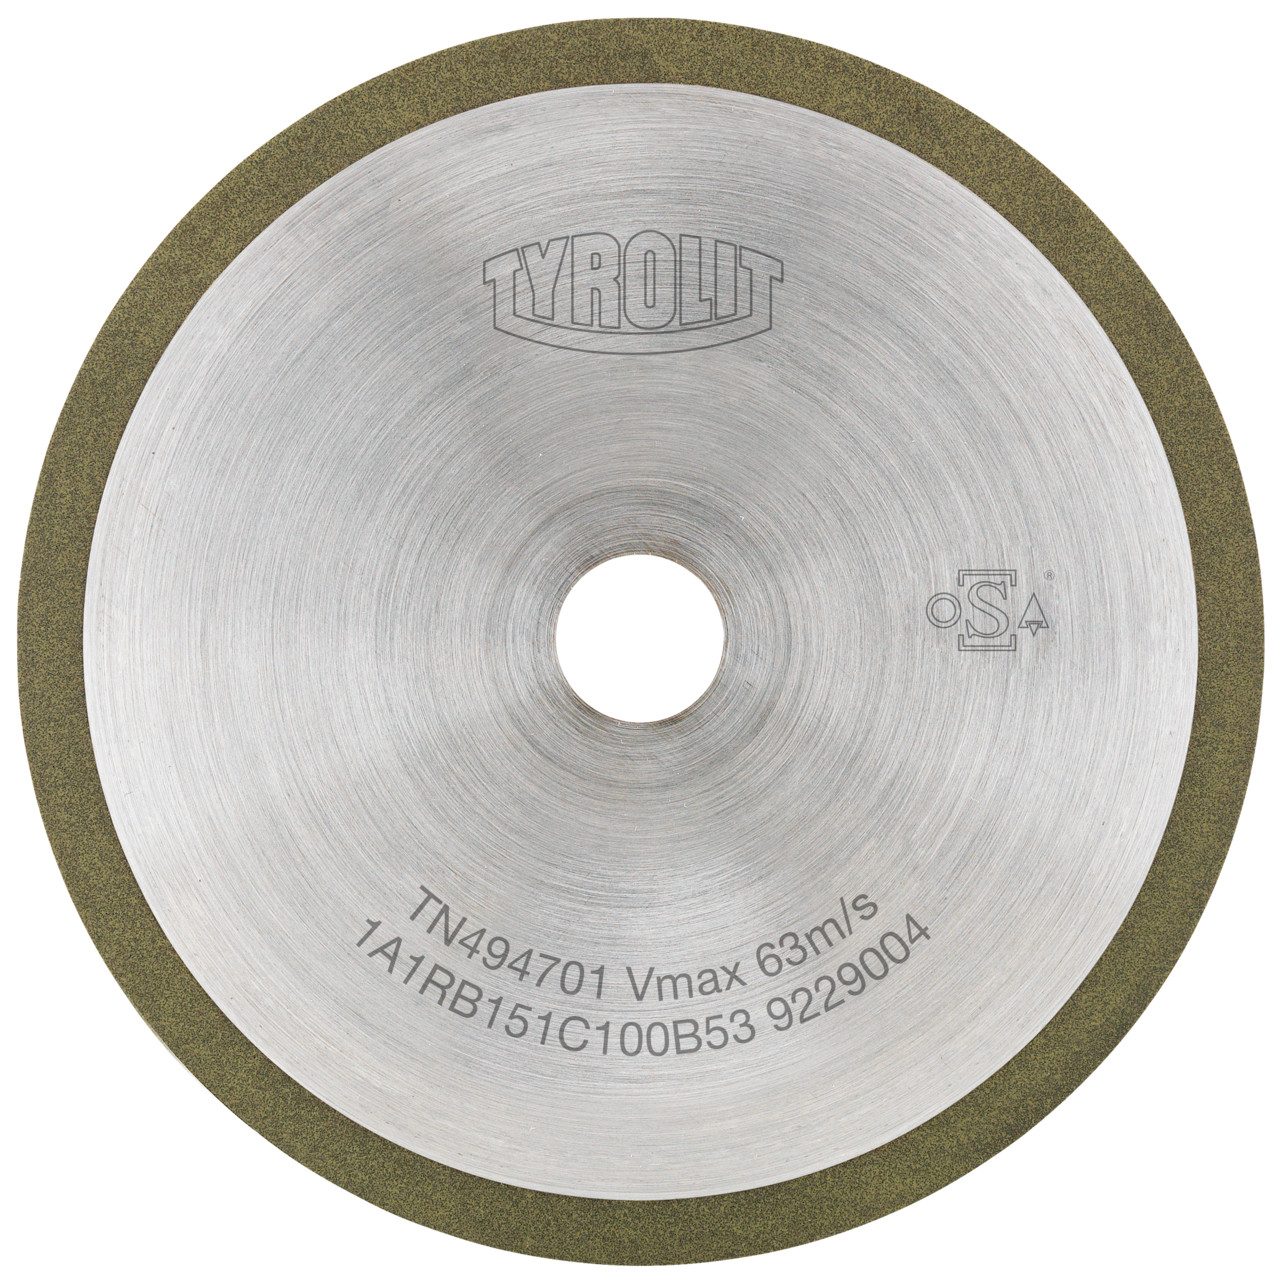 TYROLIT Utensili rotativi da taglio DxDxH 100x1x20 Per metallo duro, forma: 1A1R (disco da taglio con rotella continua), Art. 100660